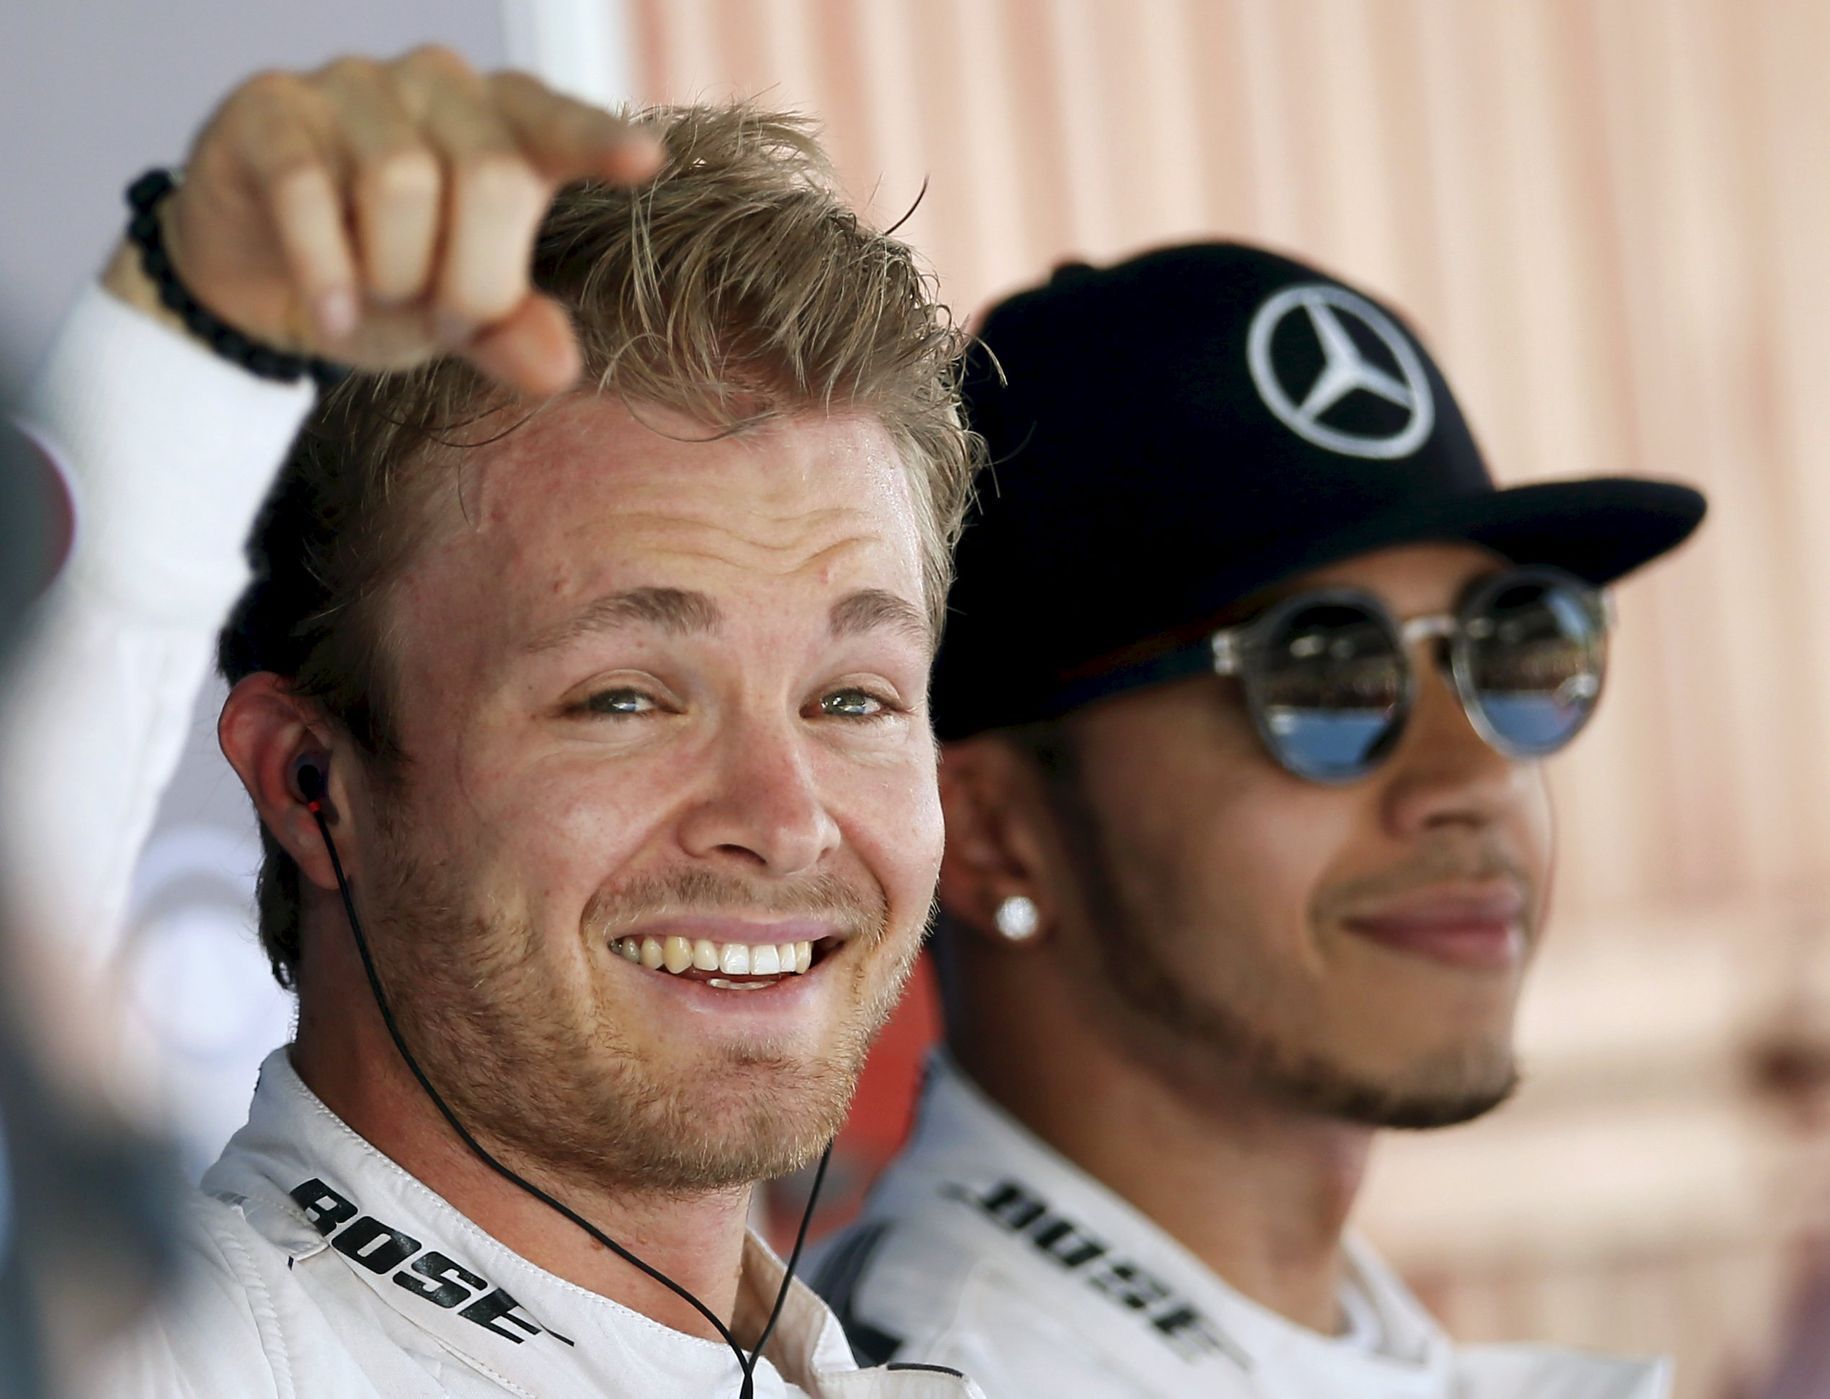 F1, VC Španělska 2015: Nico Rosberg a Lewis Hamilton, Mercedes